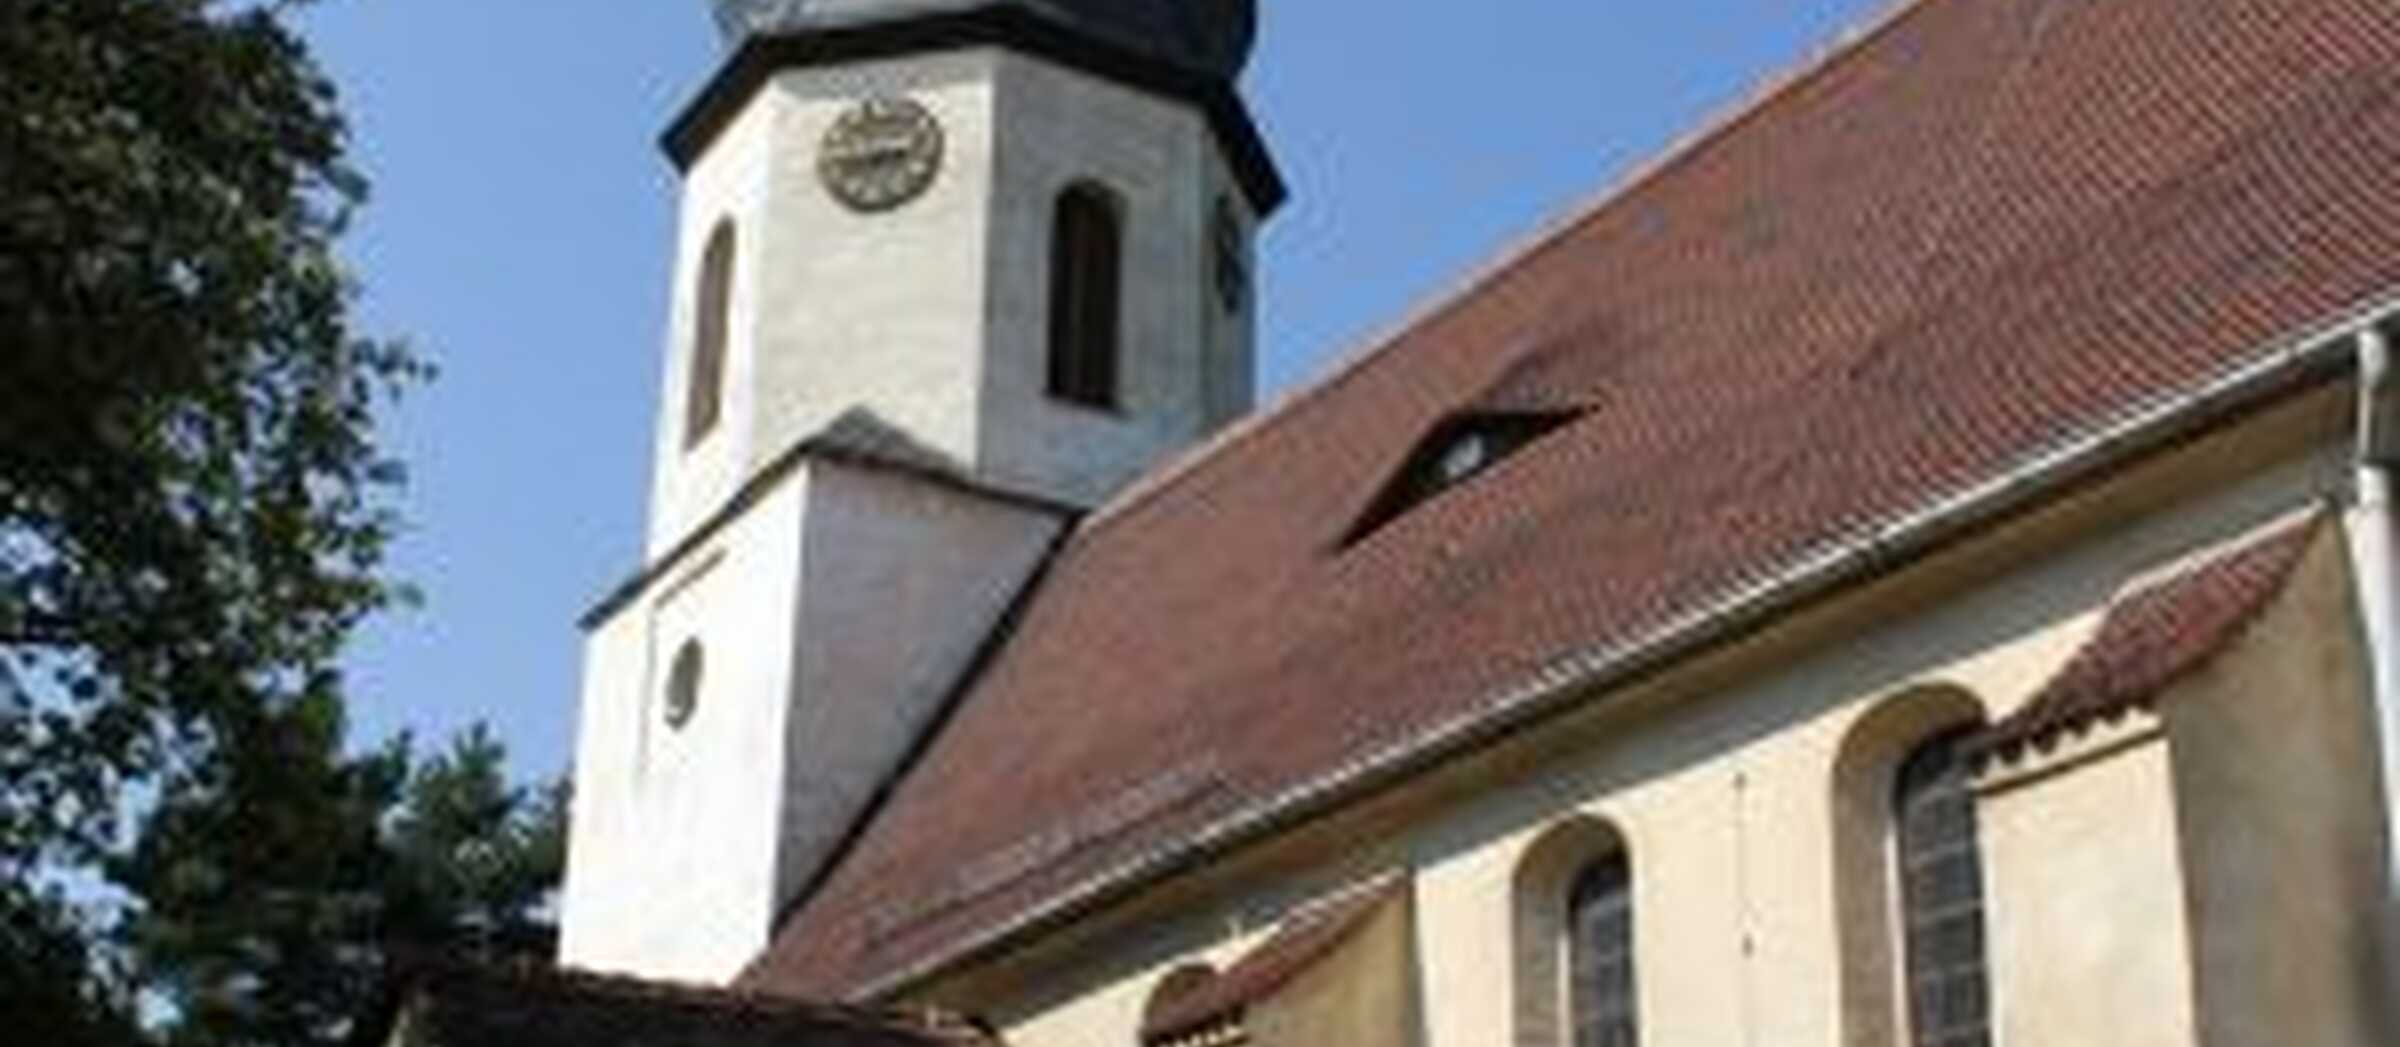 St. Elisabeth Kirche Halle-Beesen